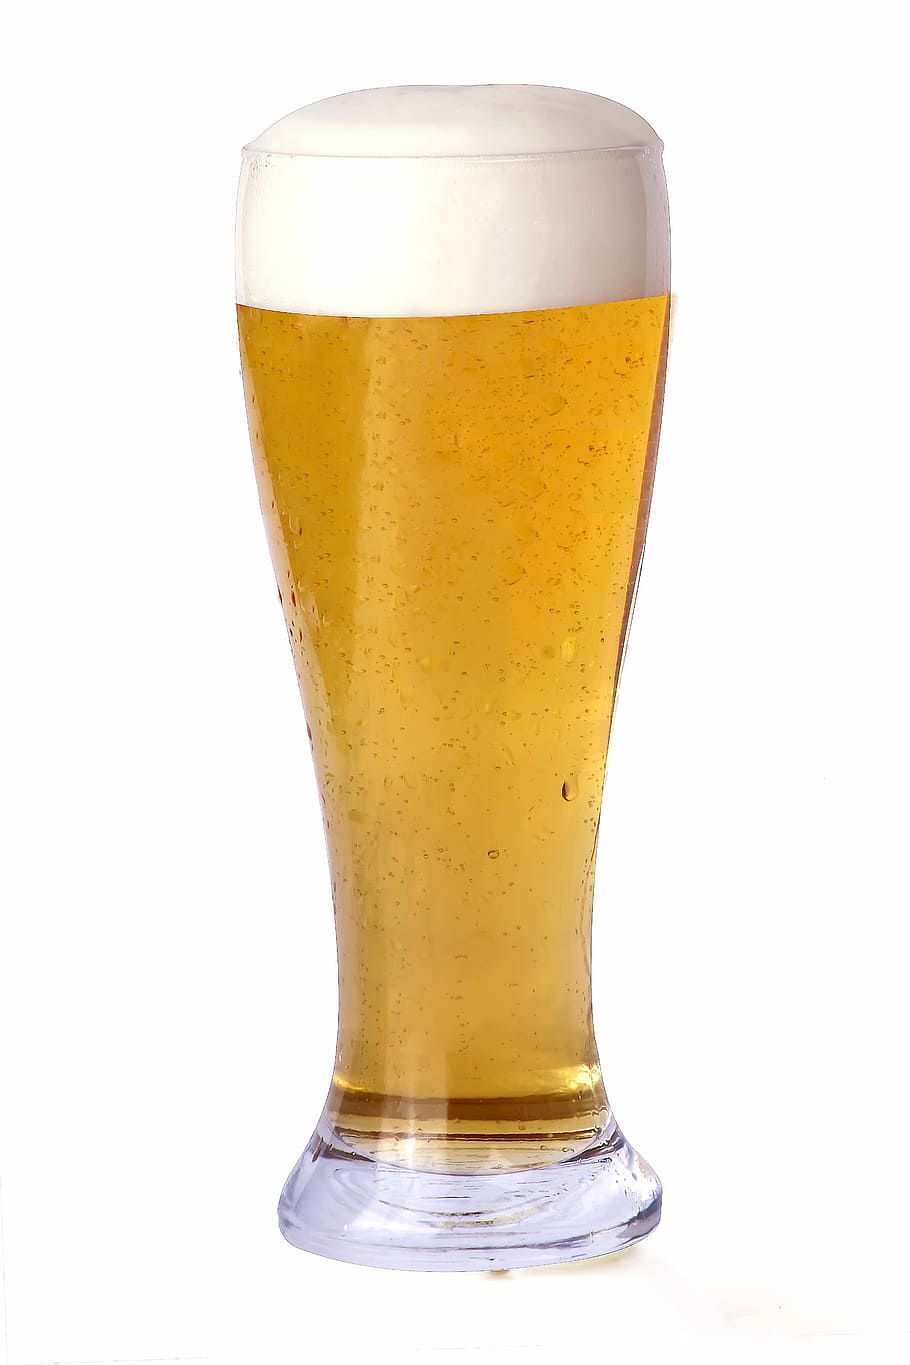 冷たいビール, ビール, スタイン, 泡, シュタイン, ビールの泡, ビール-アルコール, ビールグラス, アルコール, パイントグラス